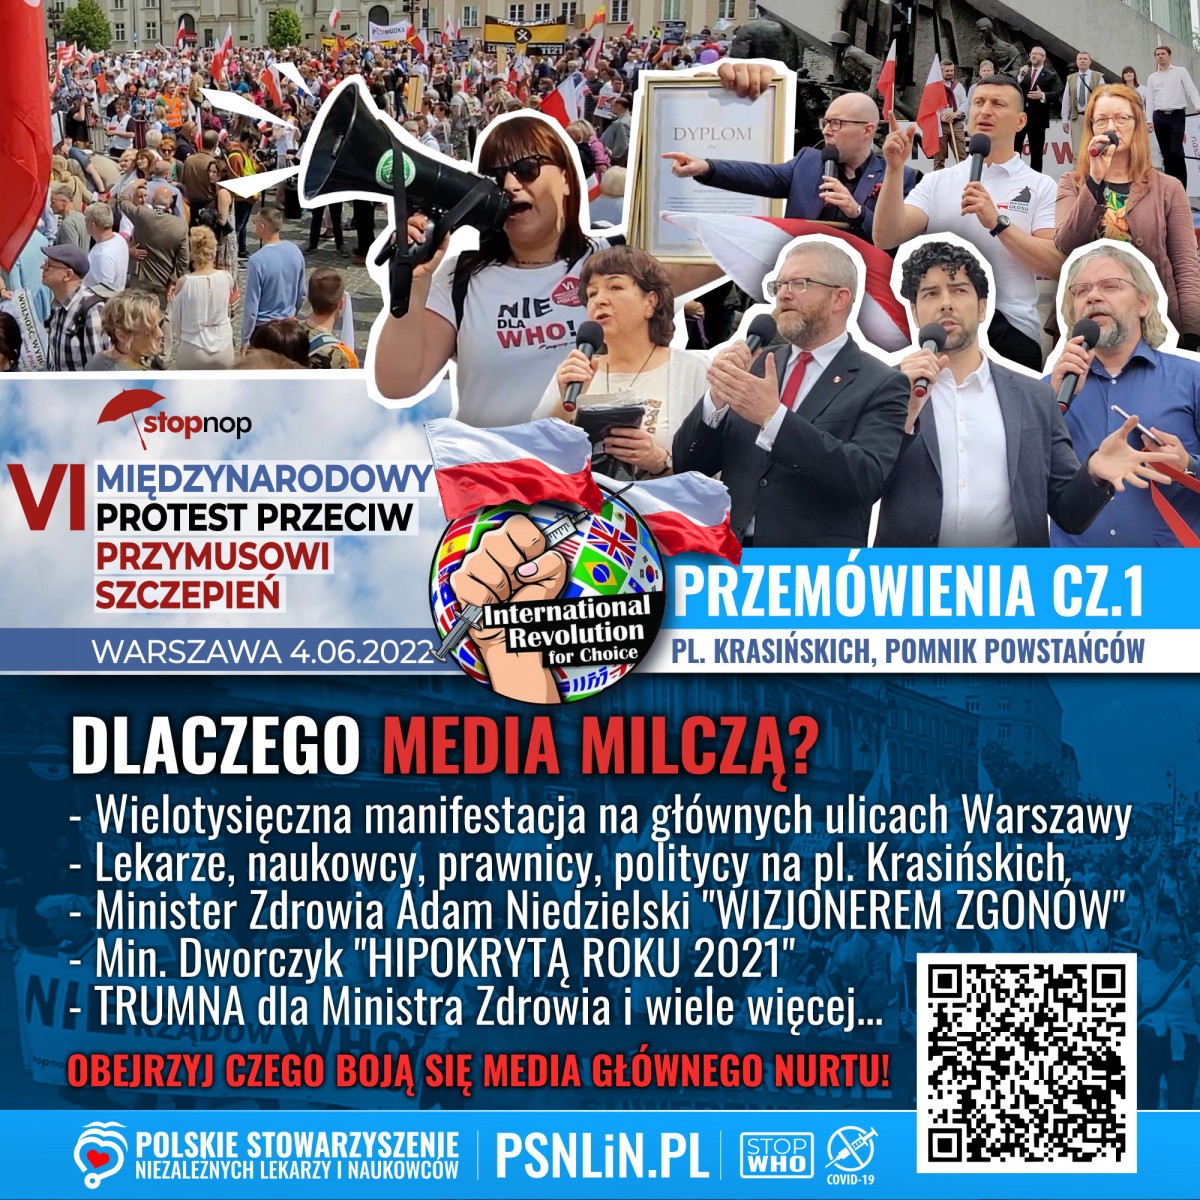 VI Międzynarodowy Protest PrzeciwPrzymusowi Szczepień - cz1 - przemówienia - memy PSNLiN